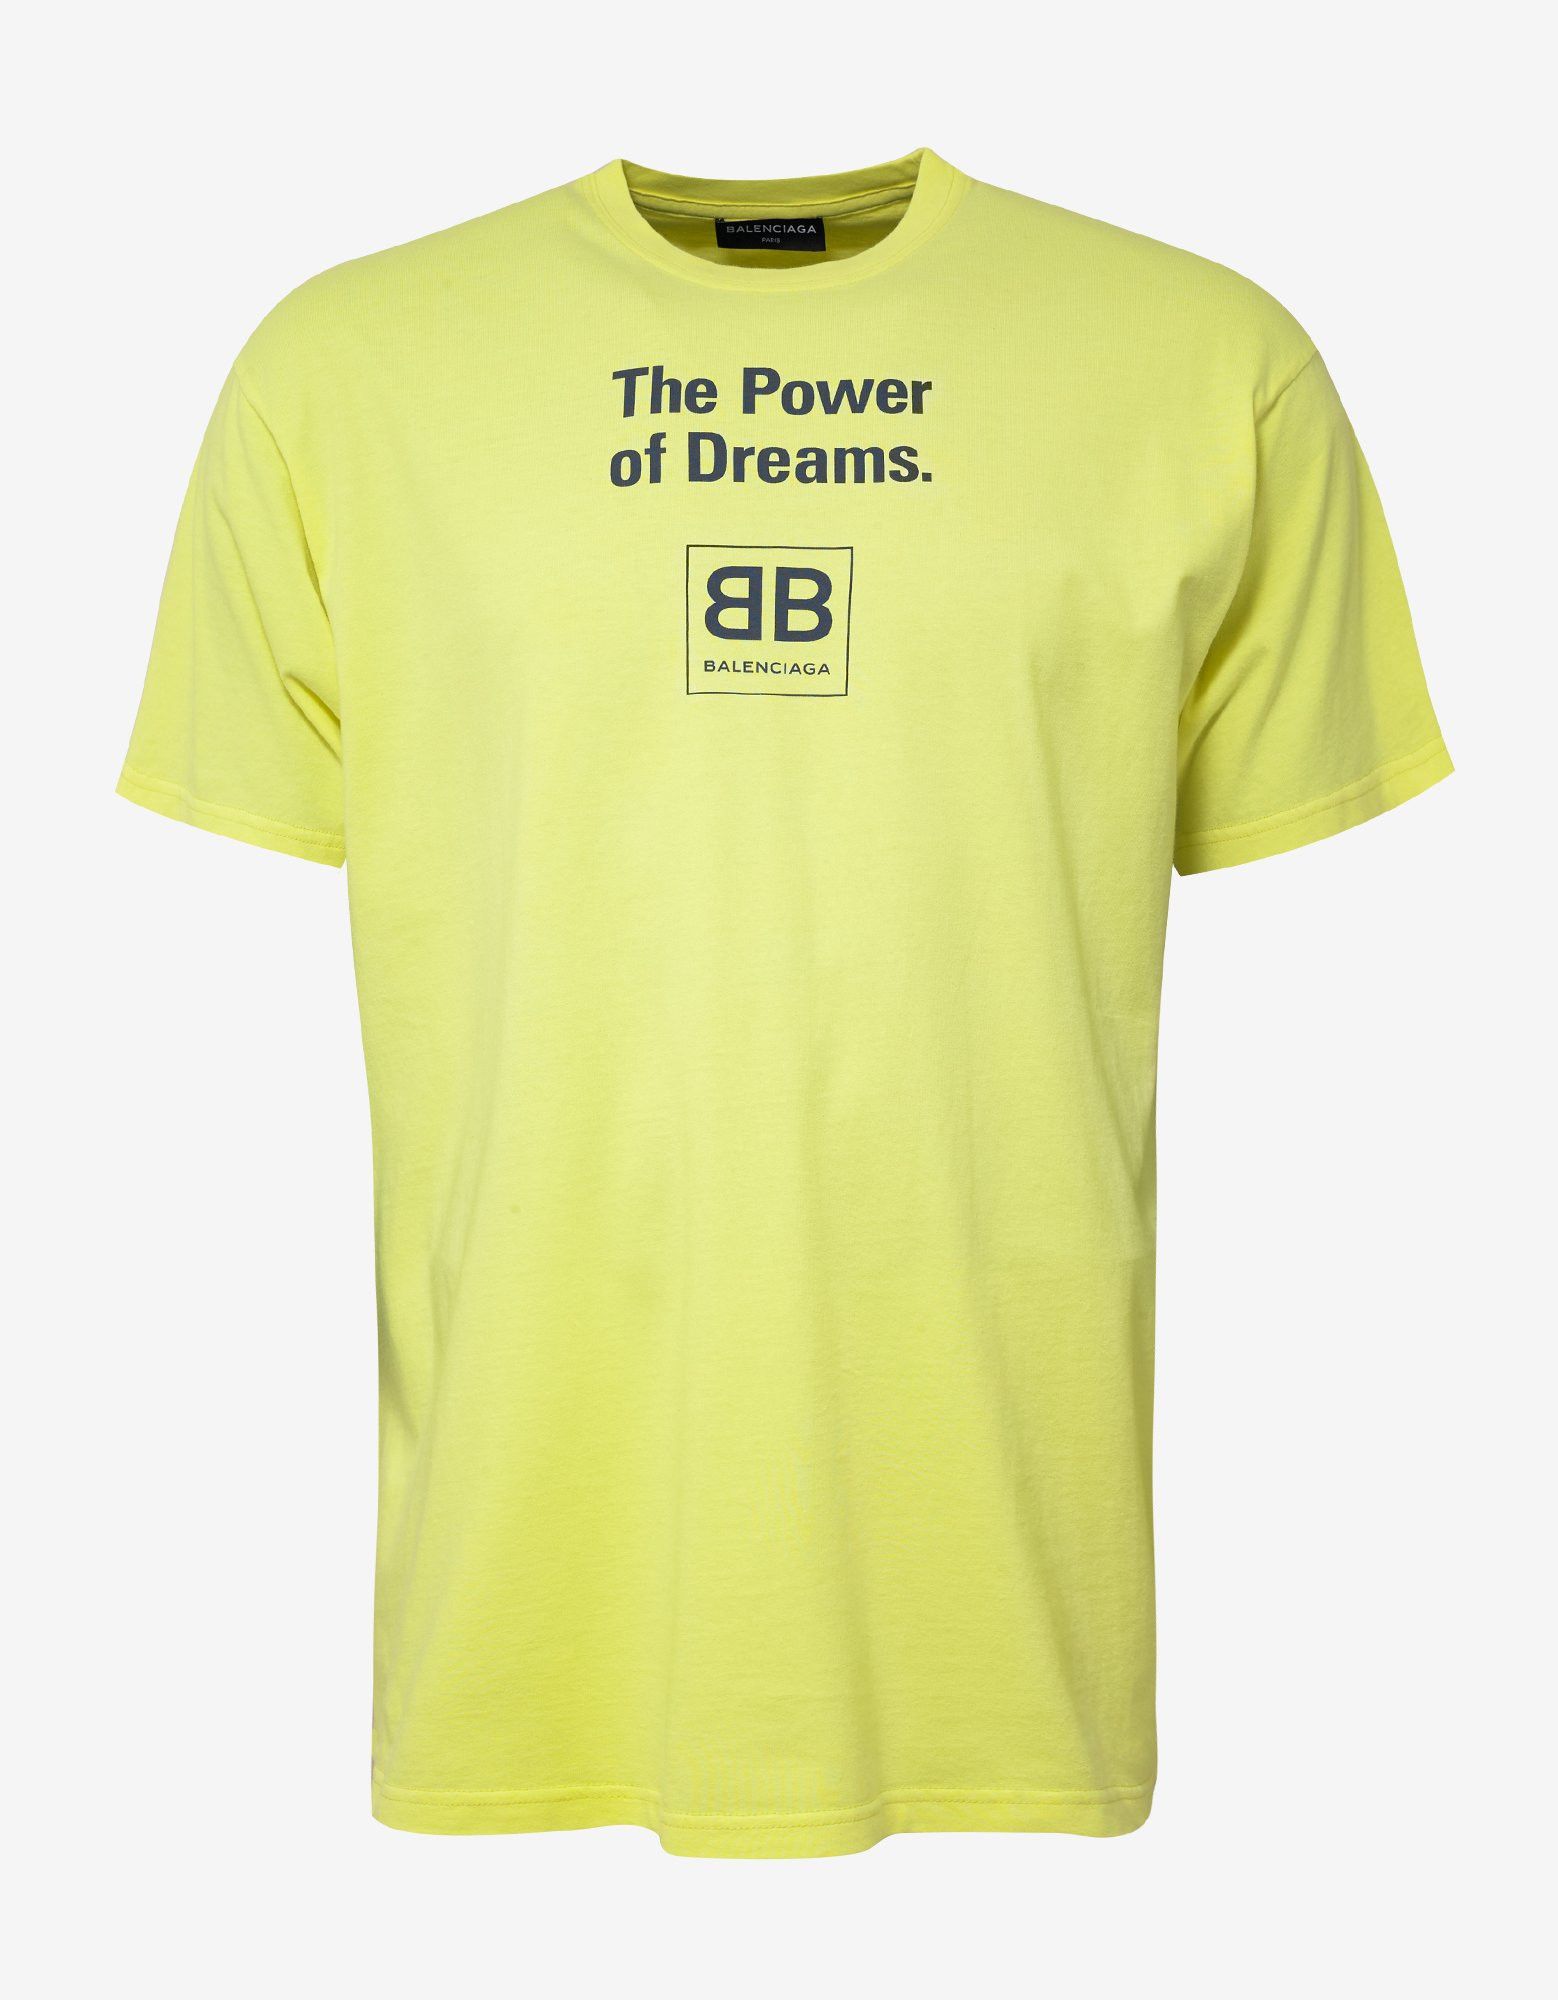 klæde sig ud Et centralt værktøj, der spiller en vigtig rolle Har det dårligt Balenciaga Yellow Power of Dreams Print T-Shirt | Grailed